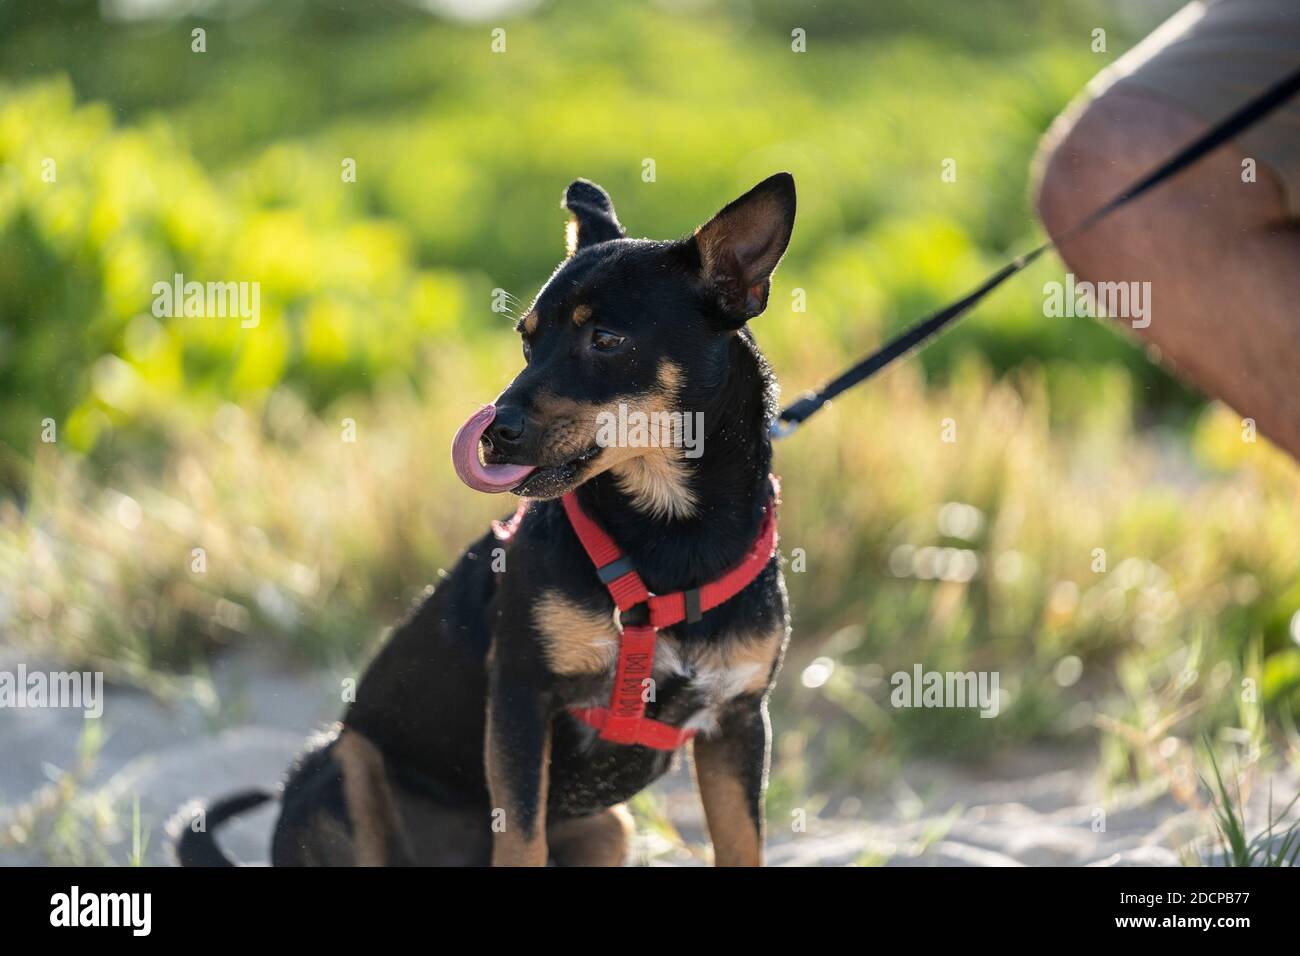 Un chien noir et marron se trouve sur la plage et léche son nez Photo Stock  - Alamy